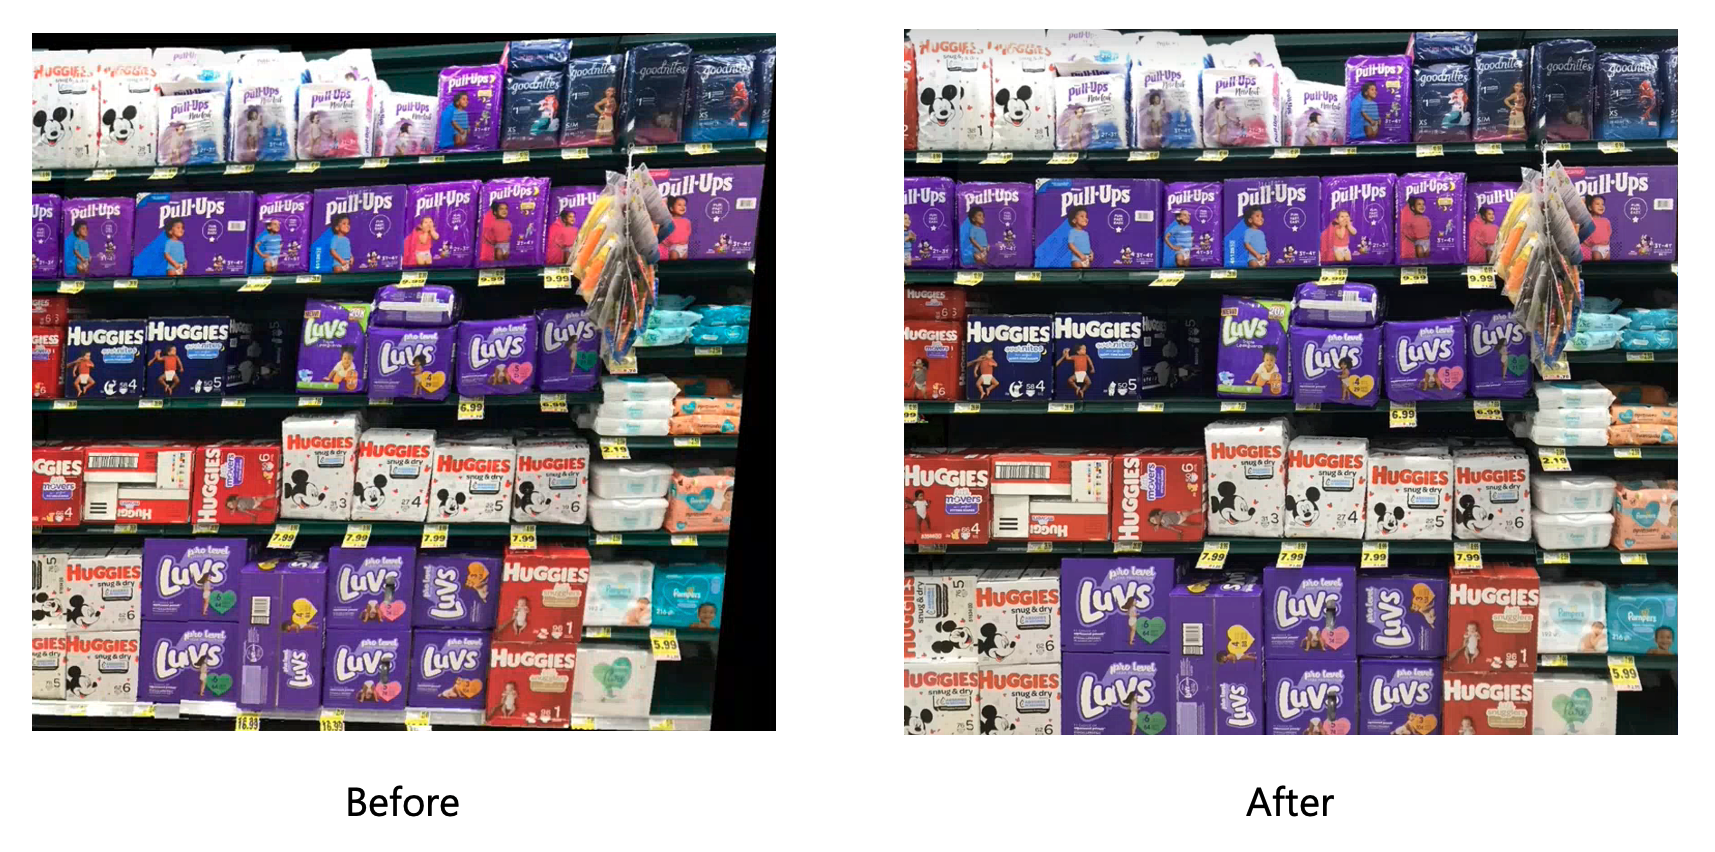 Fotos eines Verkaufsregals, vor und nach dem Korrekturvorgang.